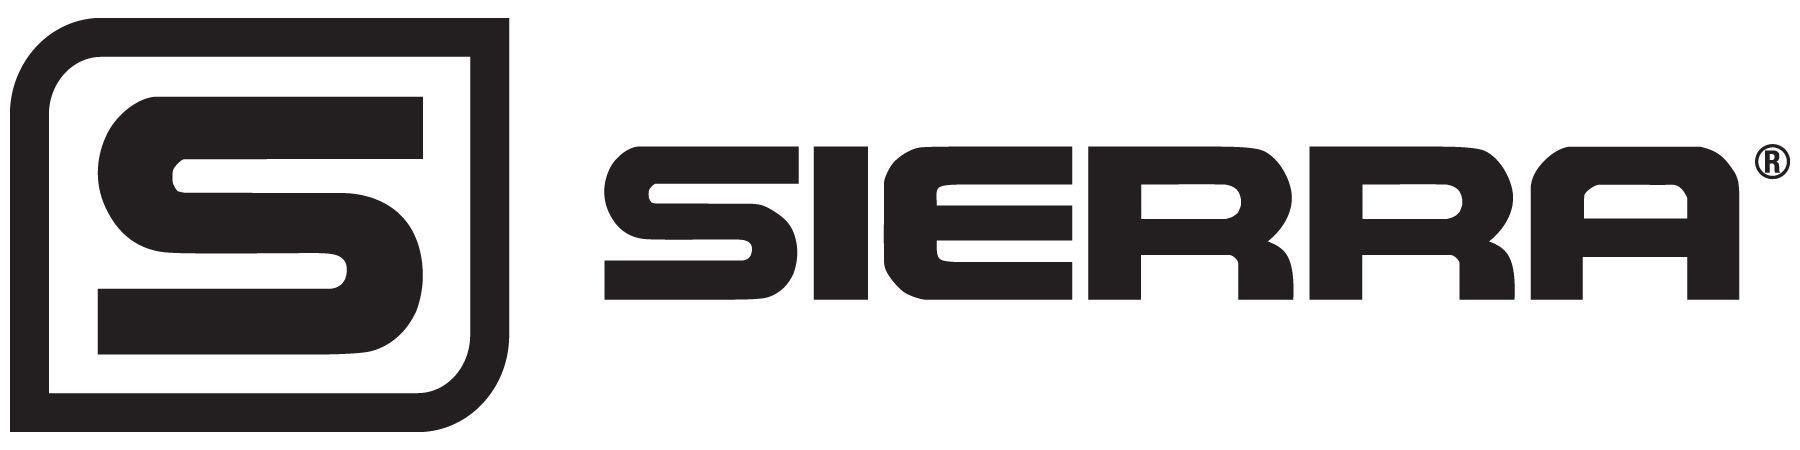 Seirra Logo - Sierra Logo